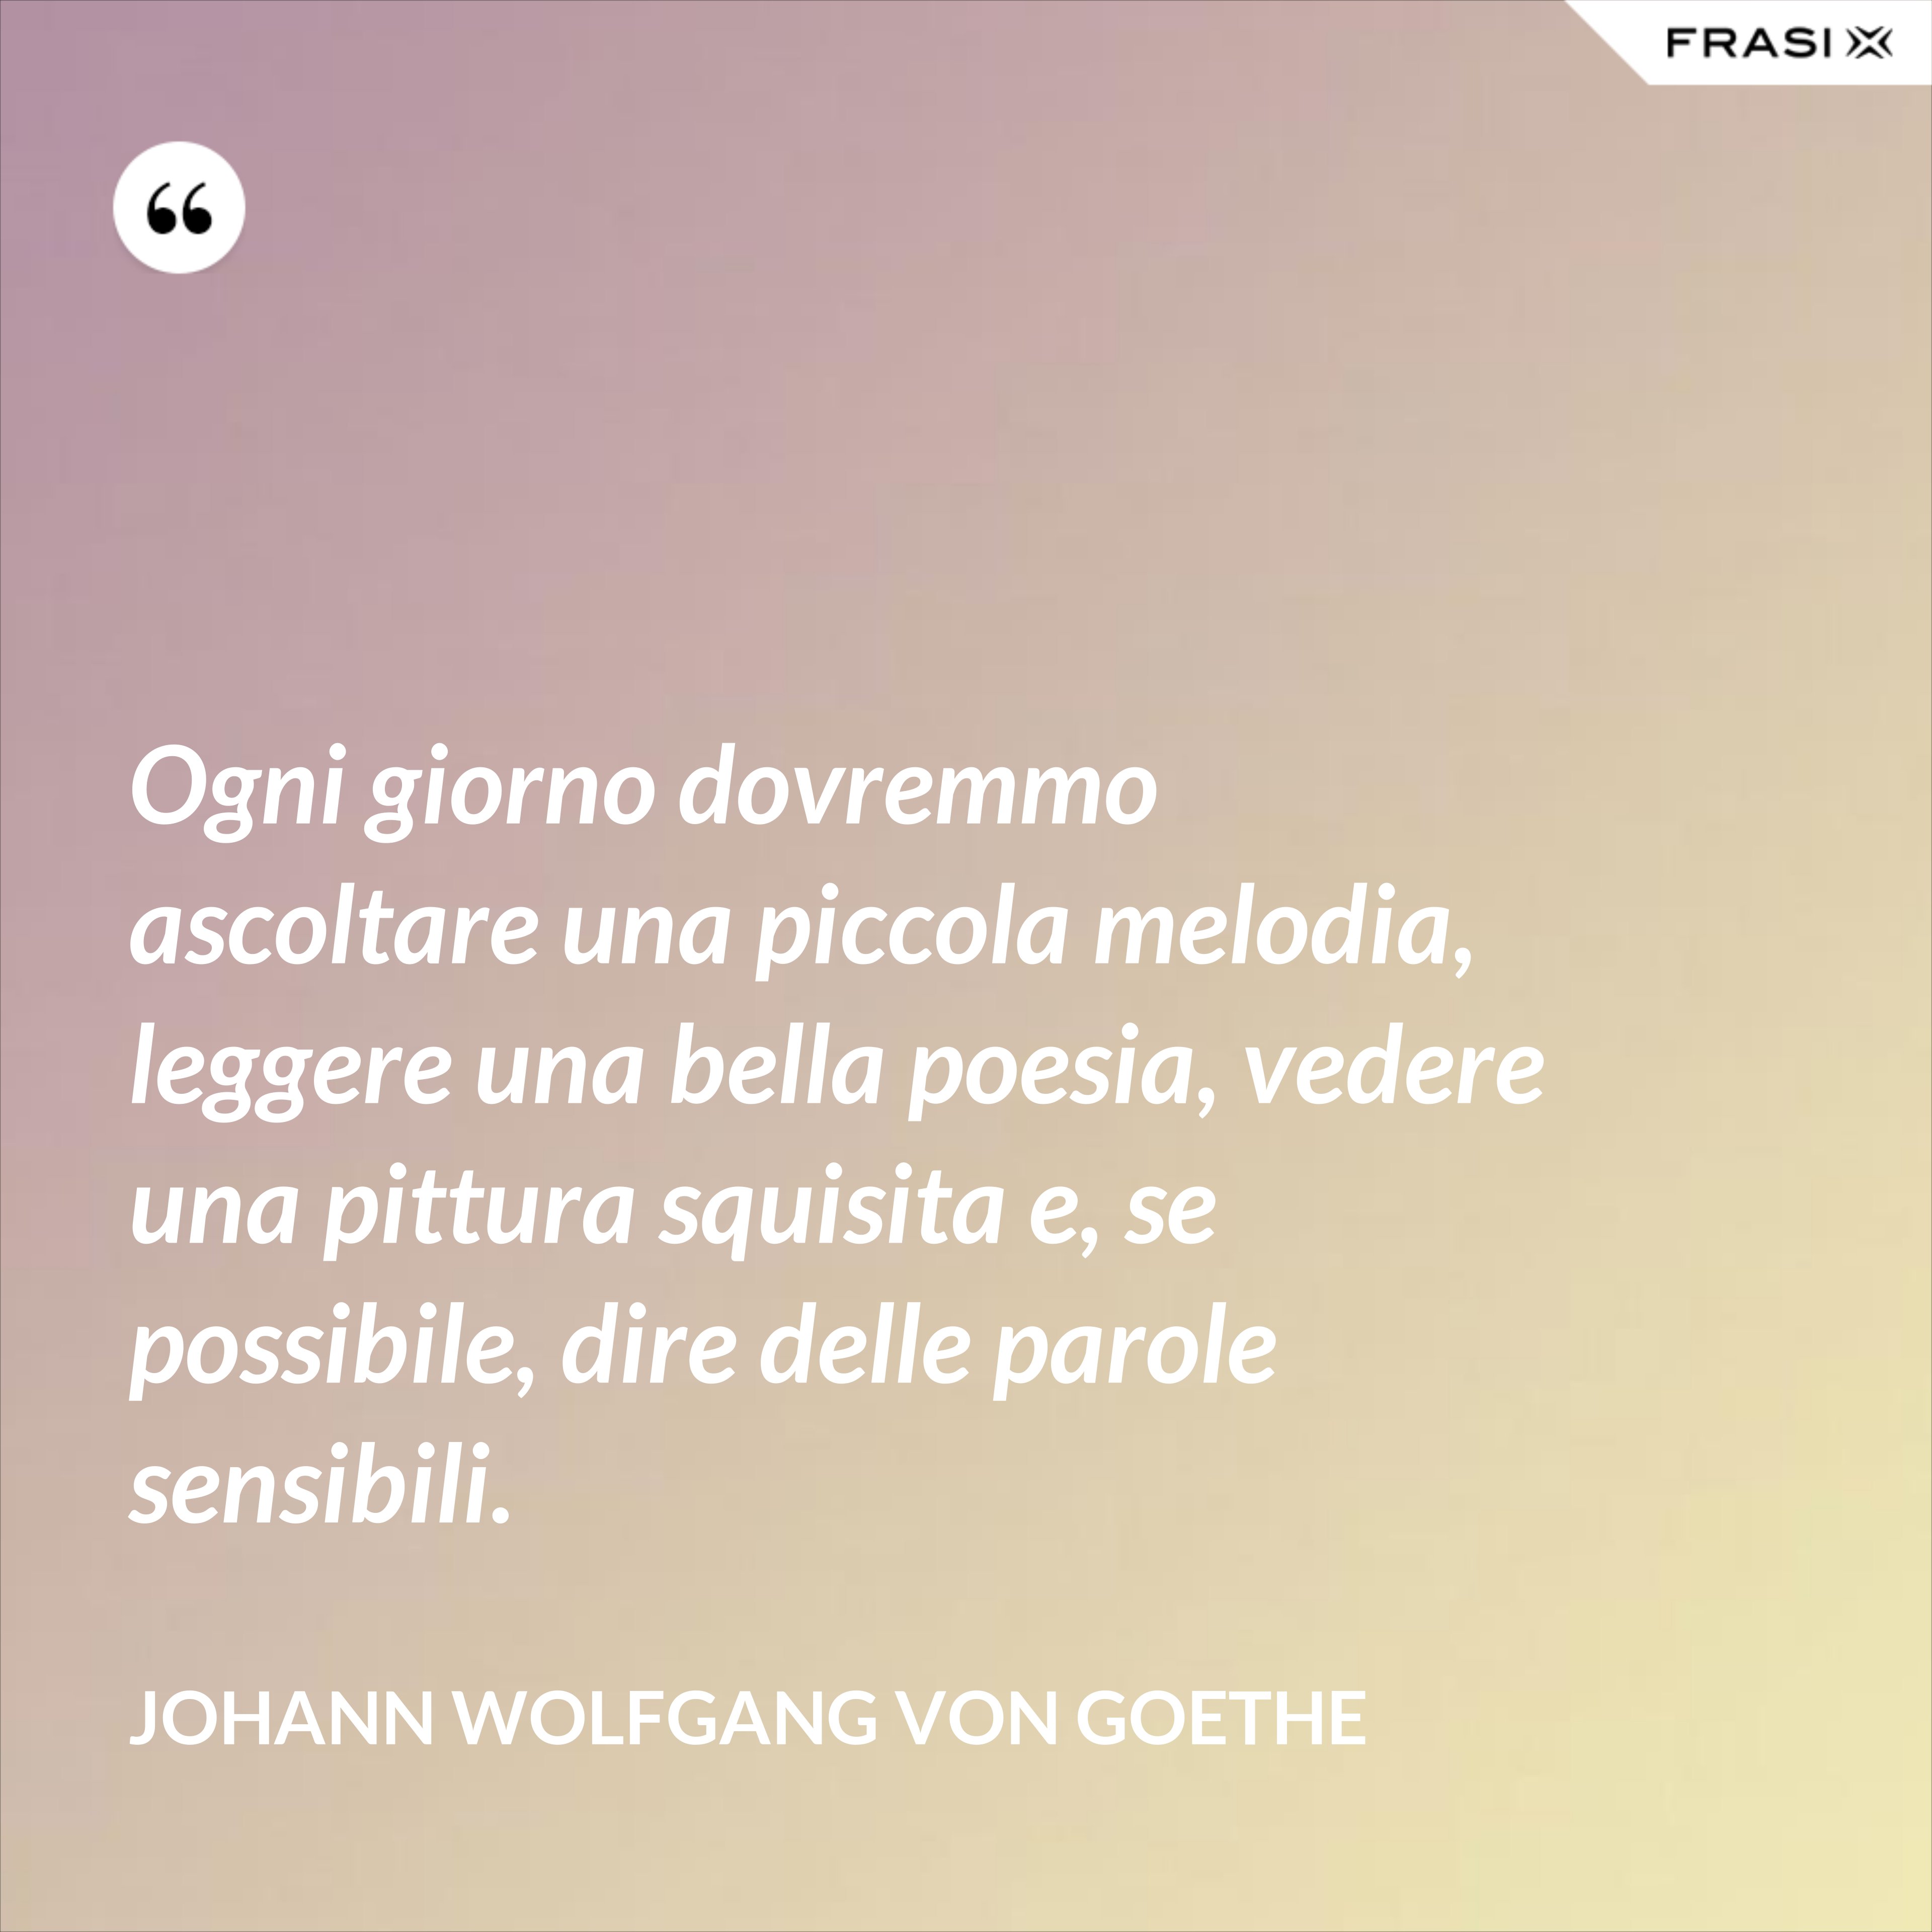 Ogni giorno dovremmo ascoltare una piccola melodia, leggere una bella poesia, vedere una pittura squisita e, se possibile, dire delle parole sensibili. - Johann Wolfgang von Goethe